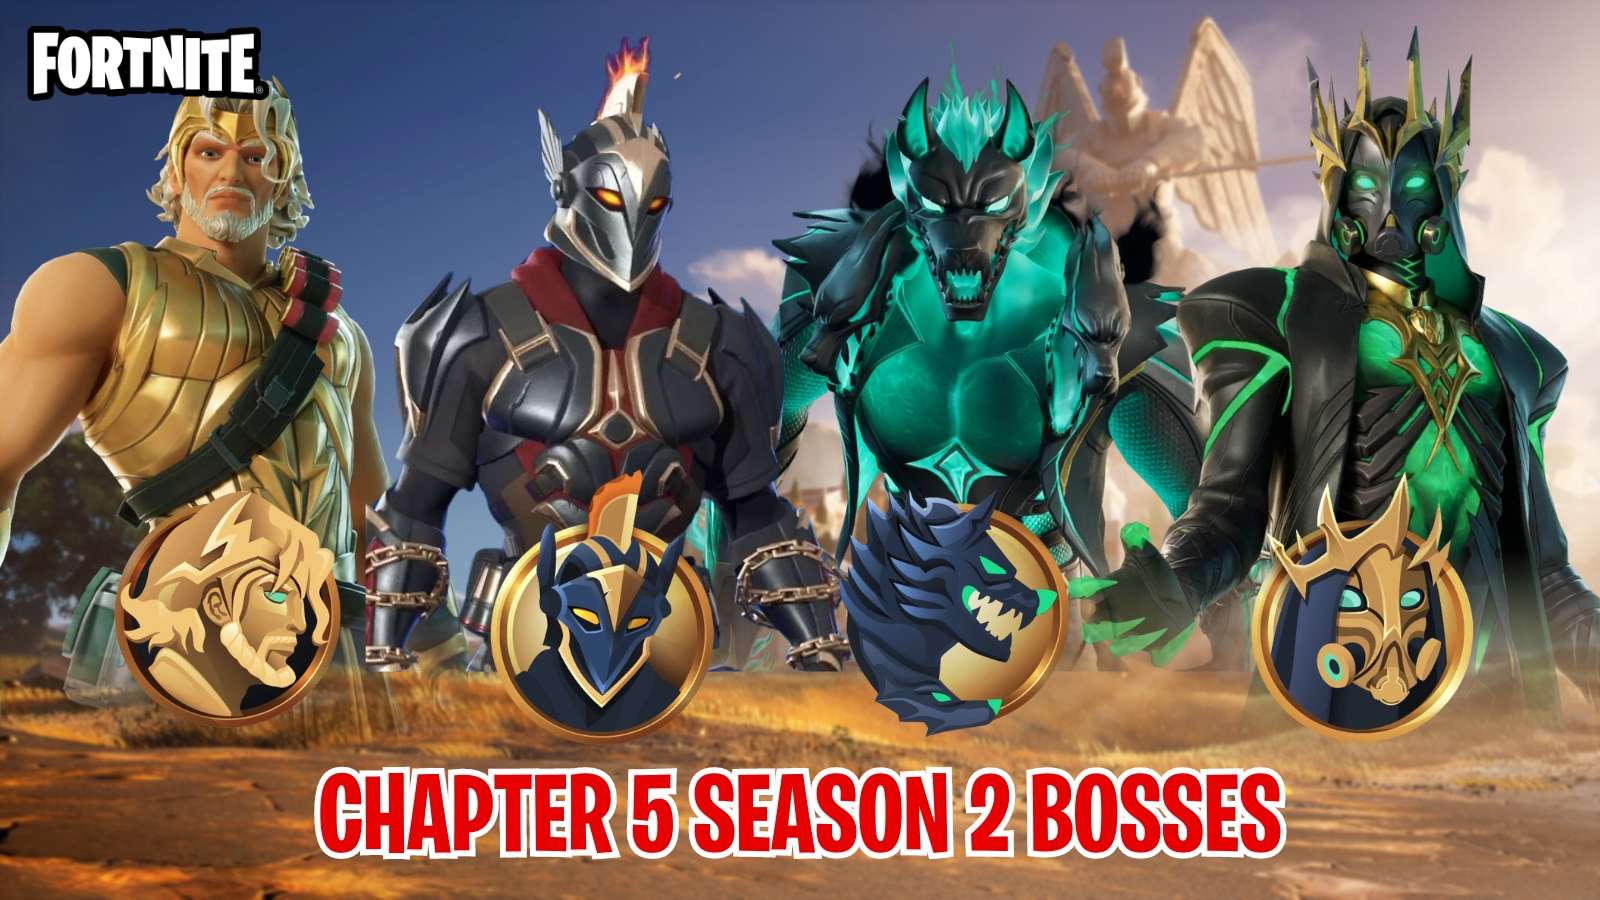 Fortnite Chapter 5 Season 2 Bosses